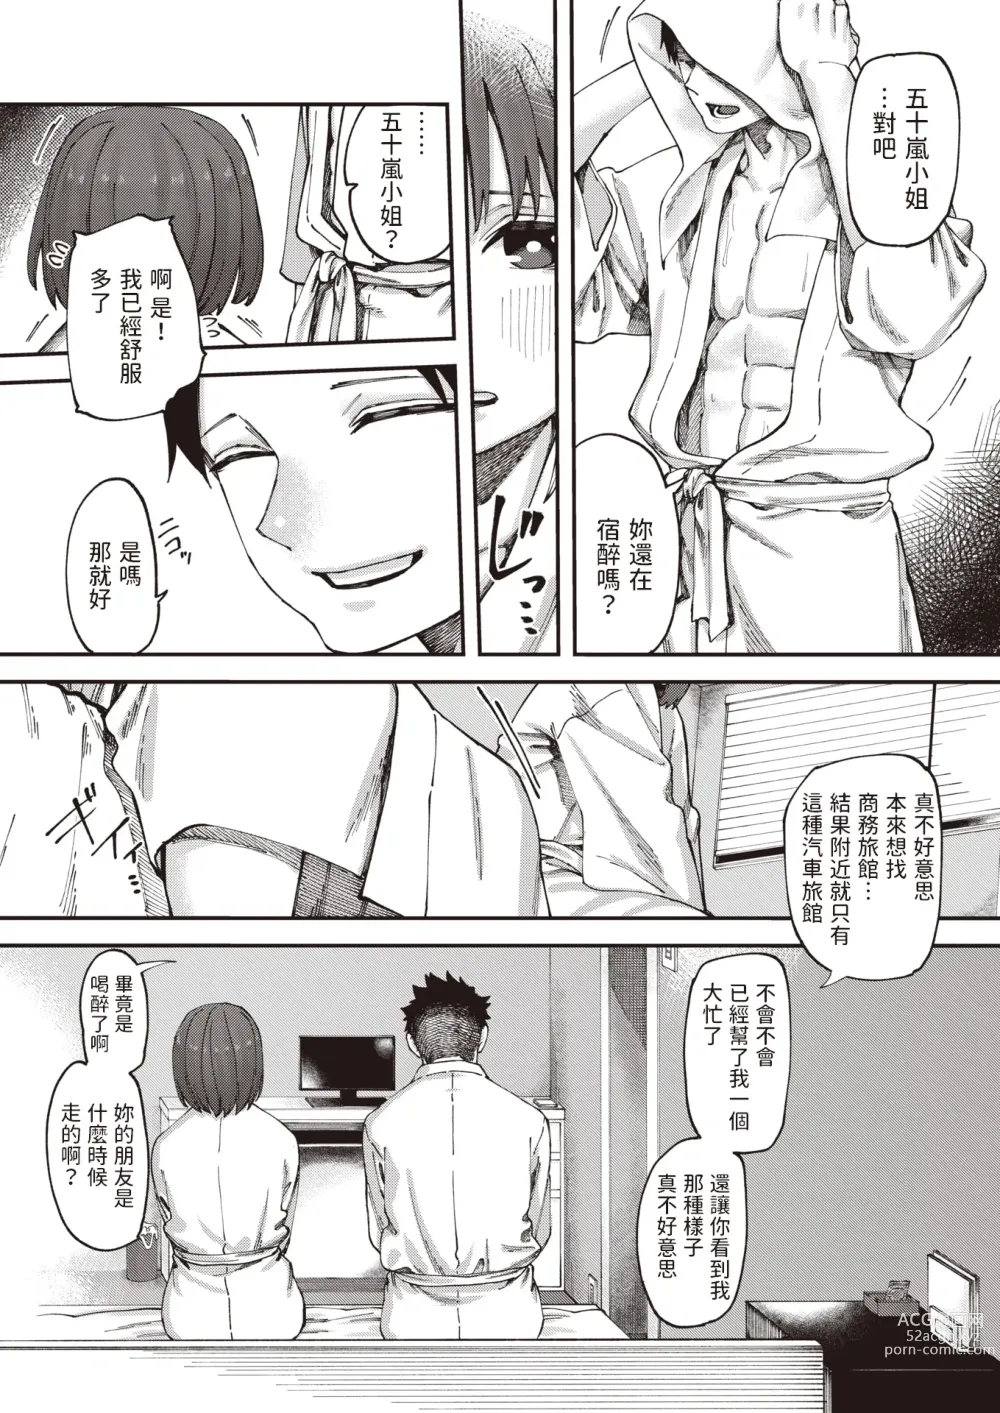 Page 5 of manga Otomodachi kara